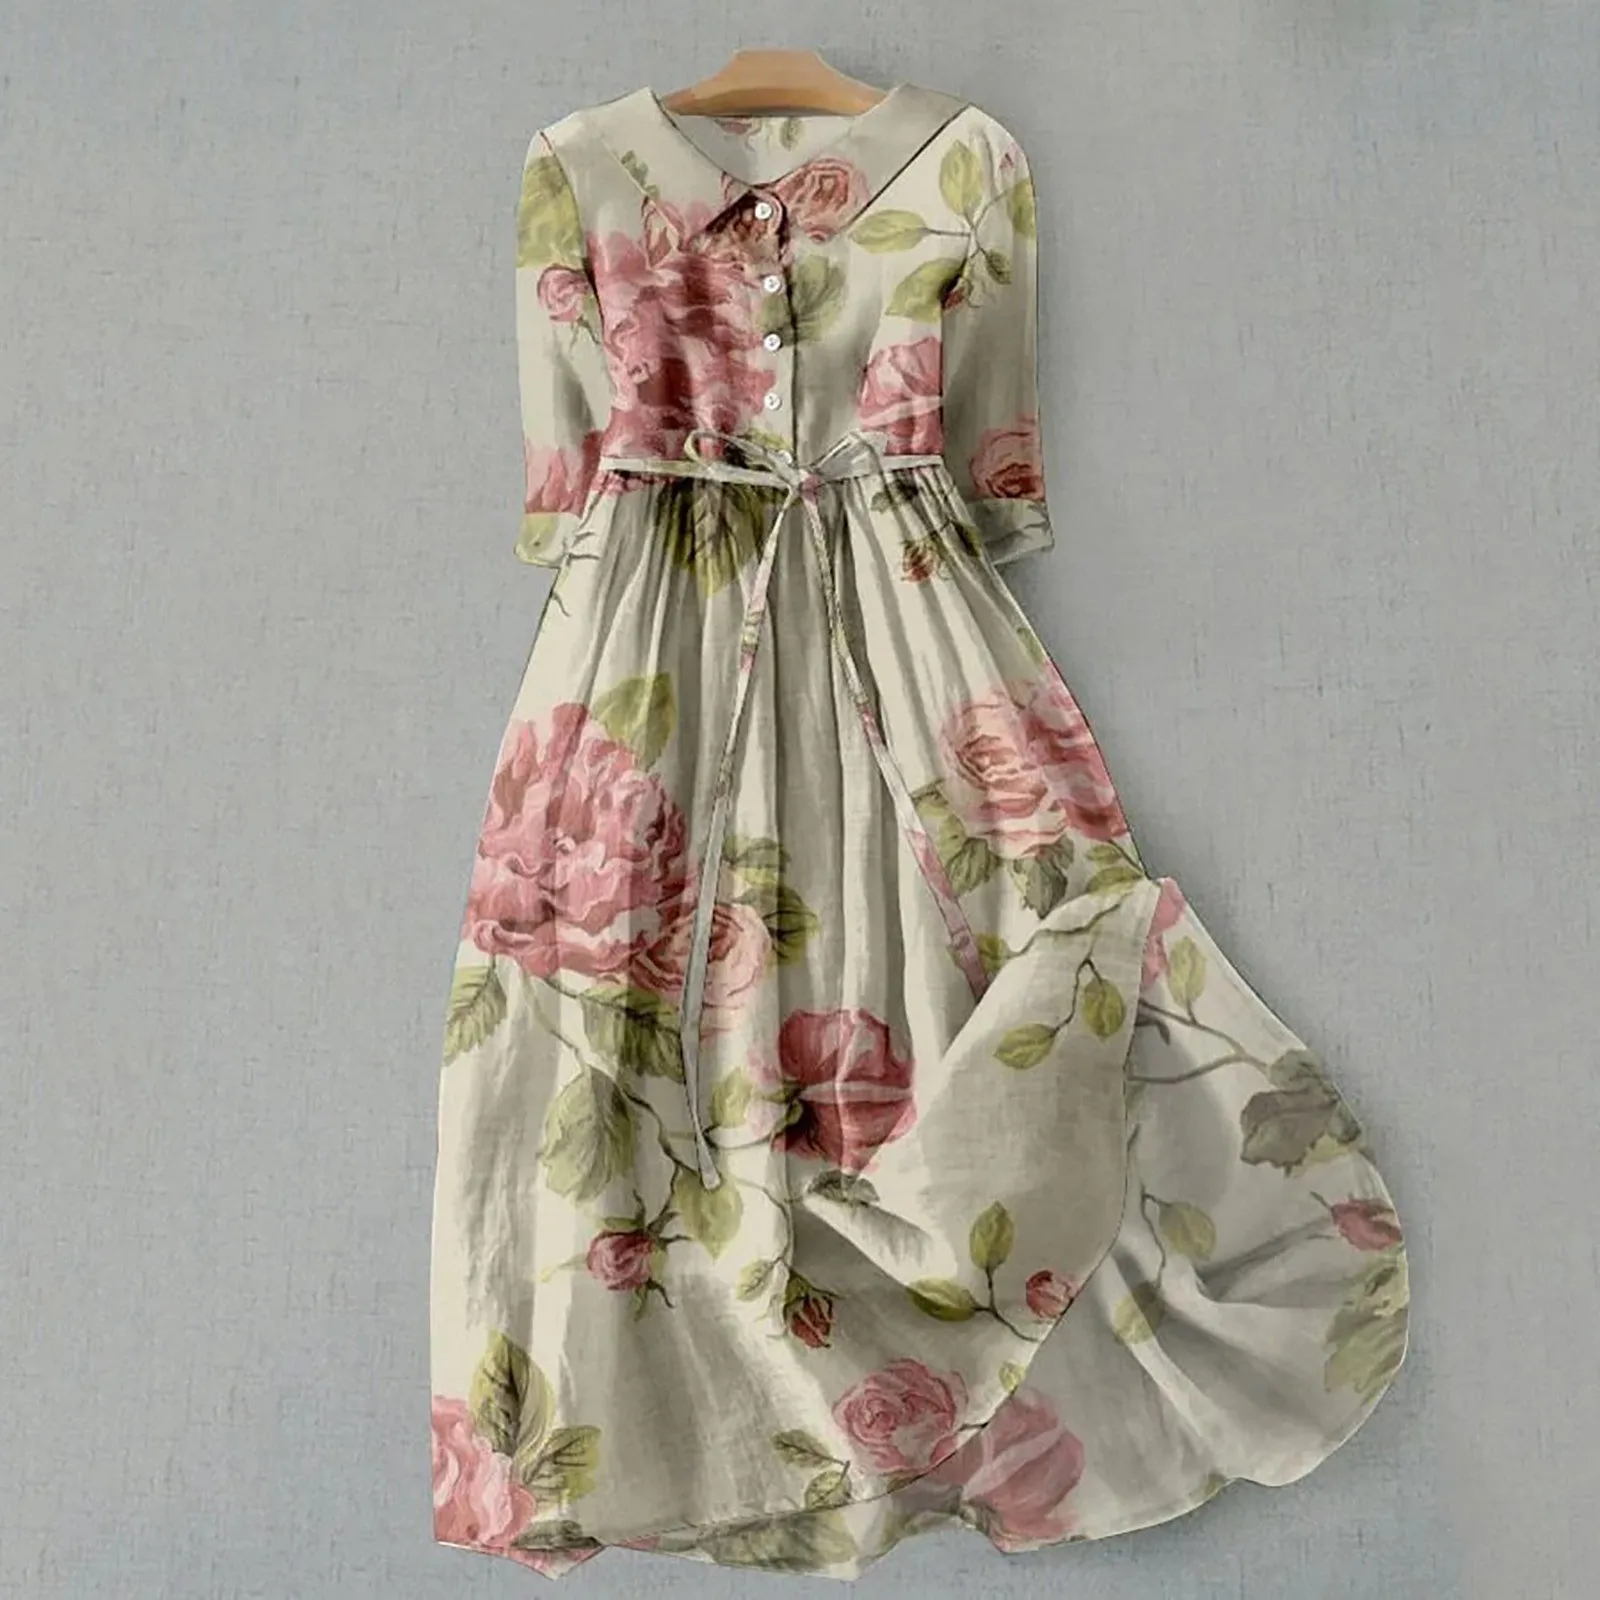 

Женское платье с цветочным принтом, однобортное богемное платье трапециевидной формы с коротким рукавом, поясом, завышенной талией и отложным воротником, для лета